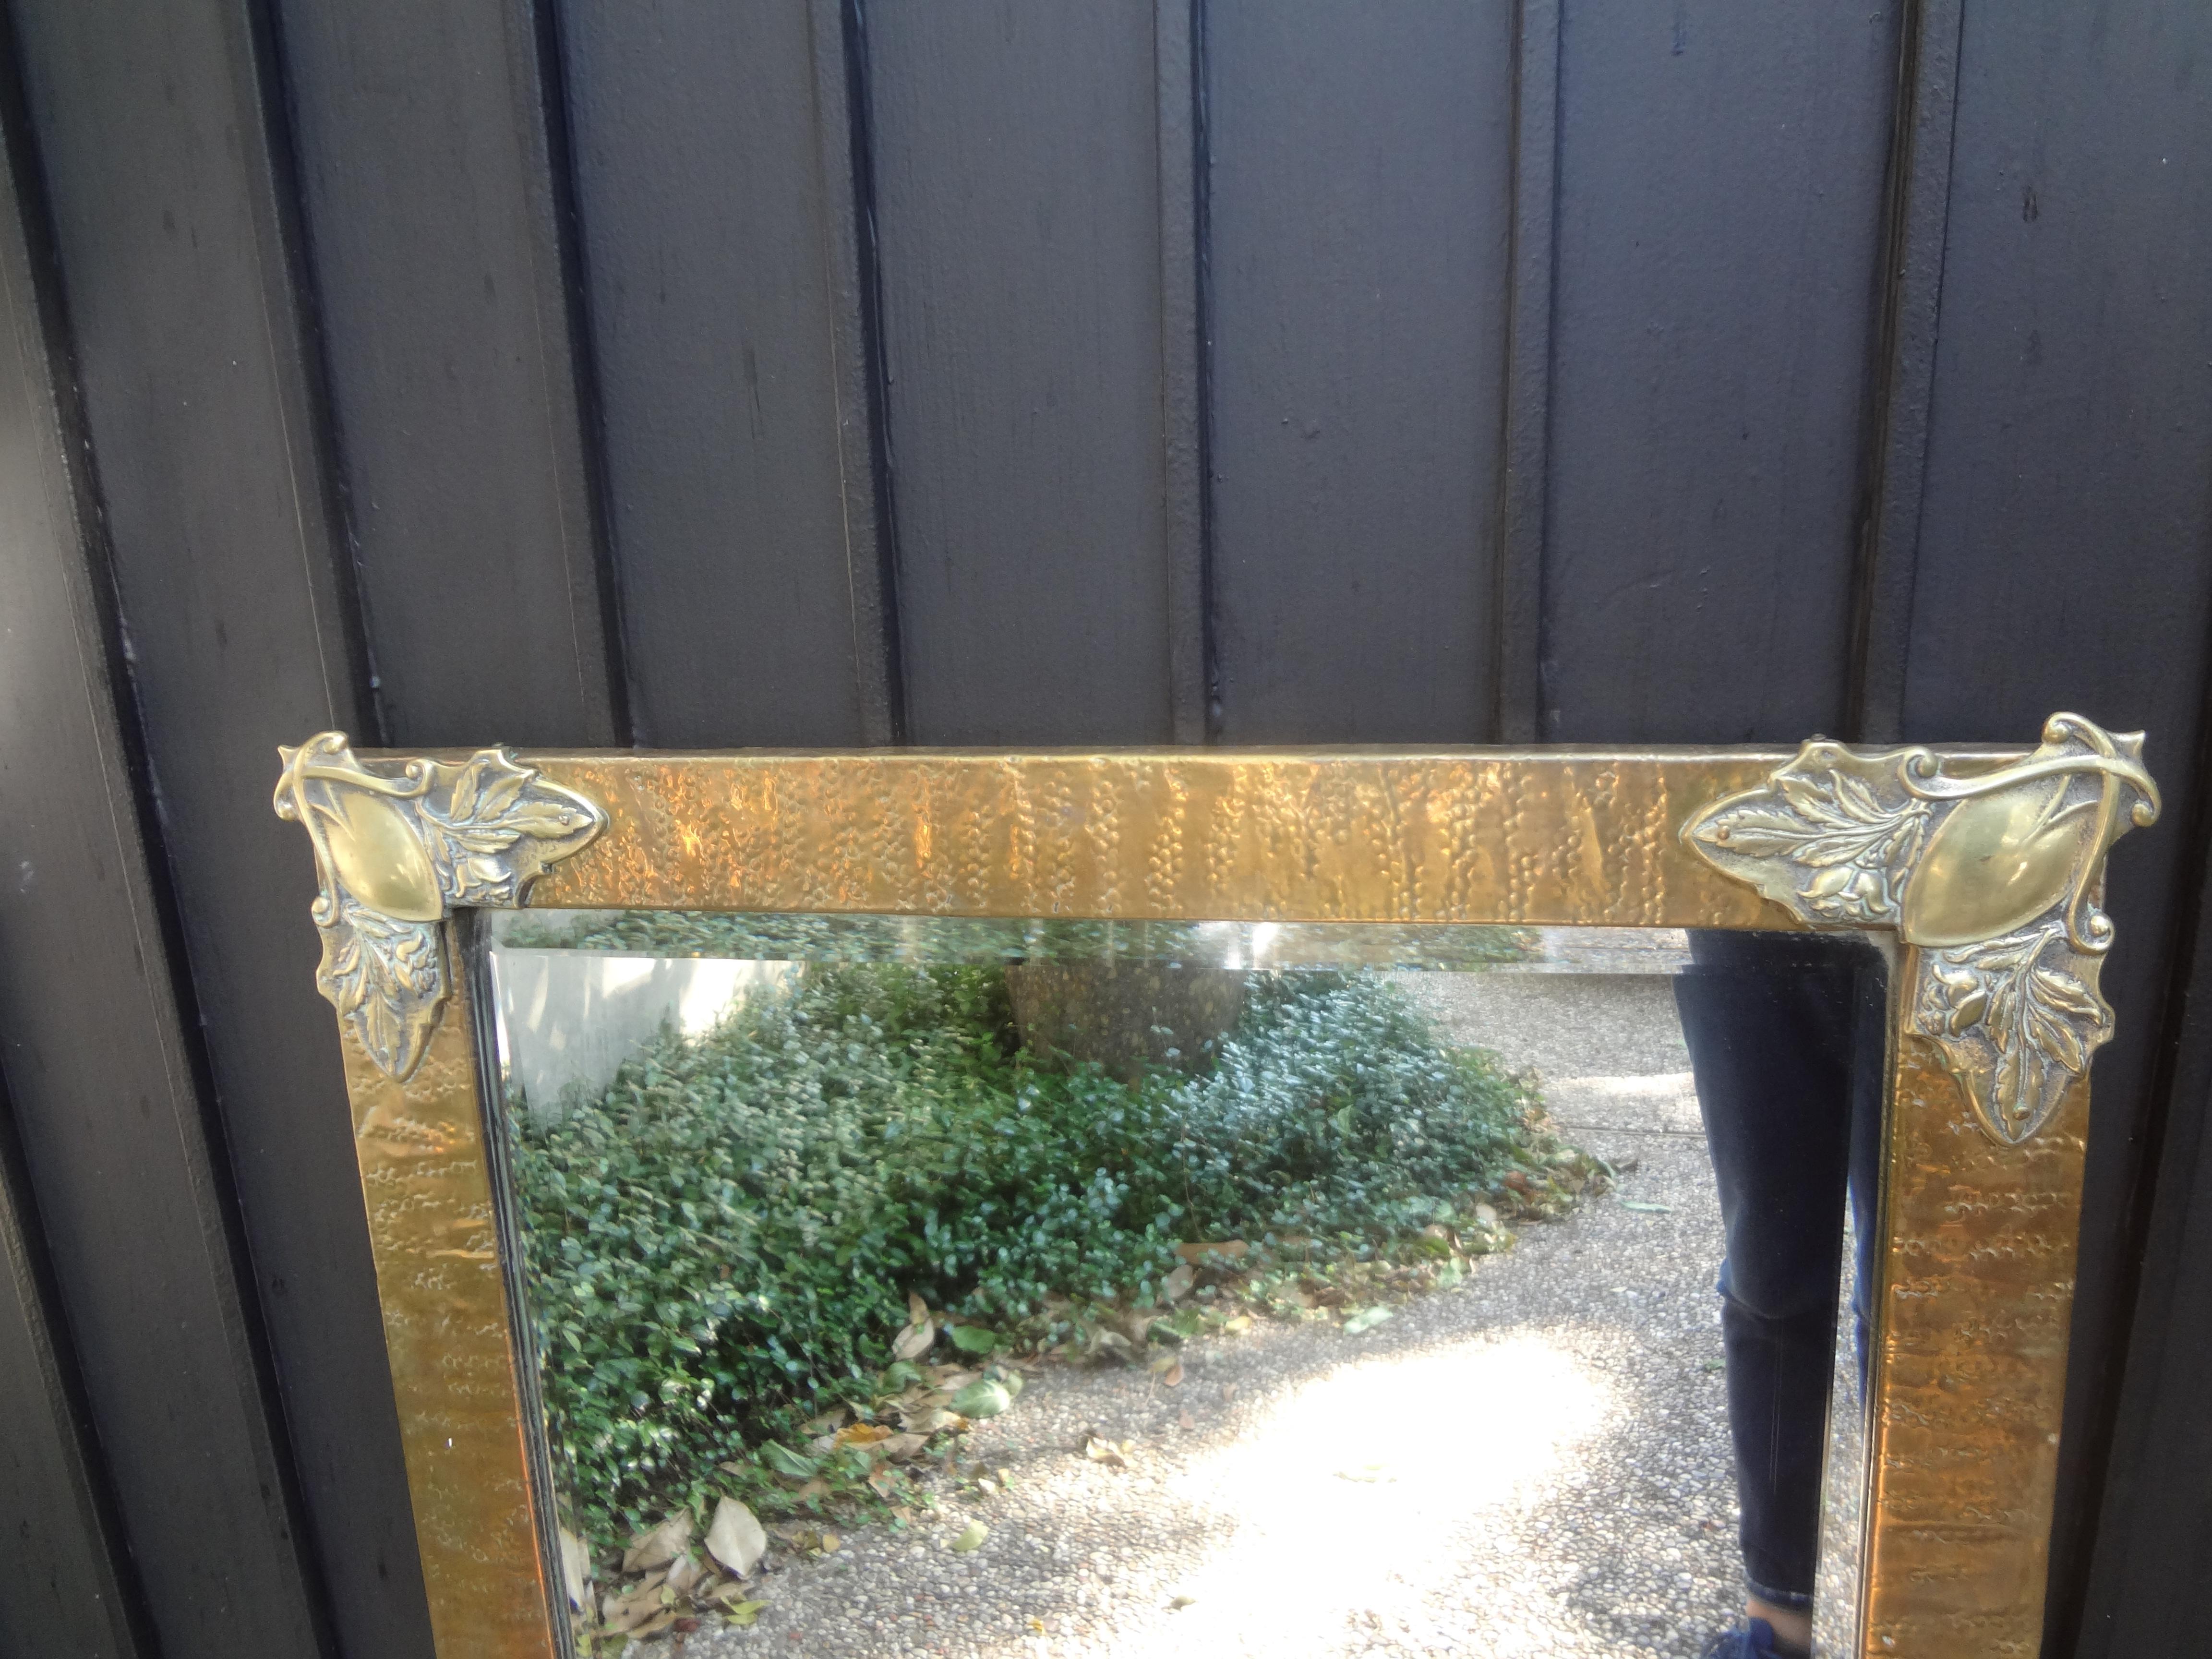 Miroir biseauté en laiton de style Art Nouveau.
Superbe miroir biseauté d'époque Art Nouveau en laiton martelé à la main avec des appliques d'angle magnifiquement décorées. Ce joli miroir biseauté peut être présenté à la verticale ou à